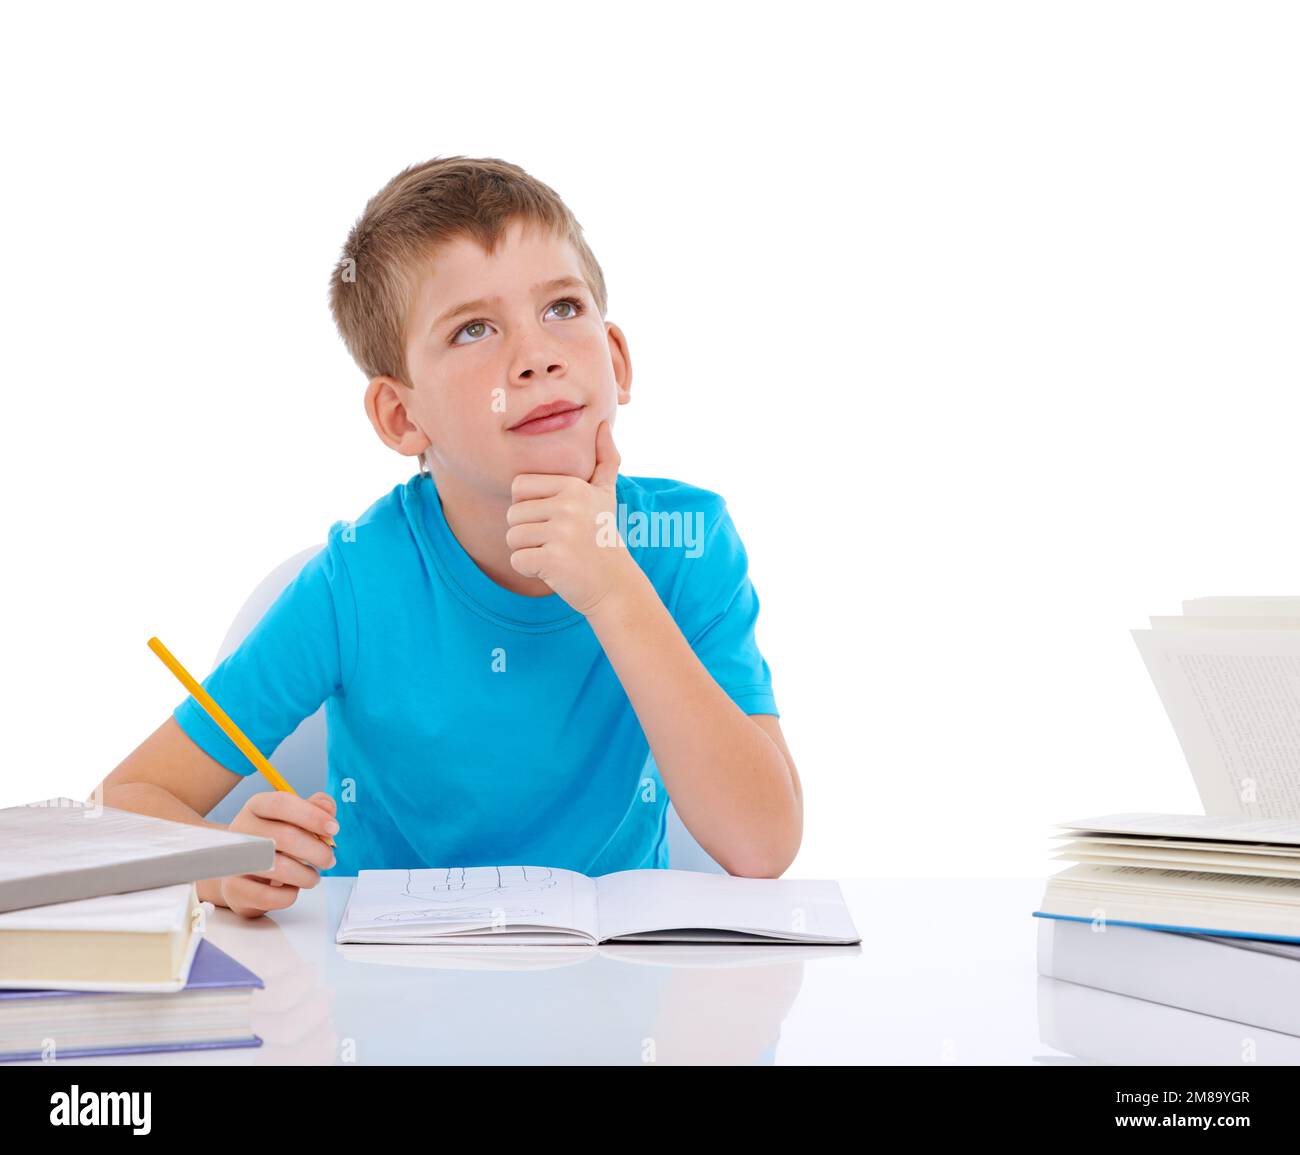 Kleiner Junge, schreibt und denkt mit Büchern am Schreibtisch, für Schule, Bildungsstudium und Studentenwissen. Papier-, Arbeits- und Kinderorientierung für das Lernen Stockfoto